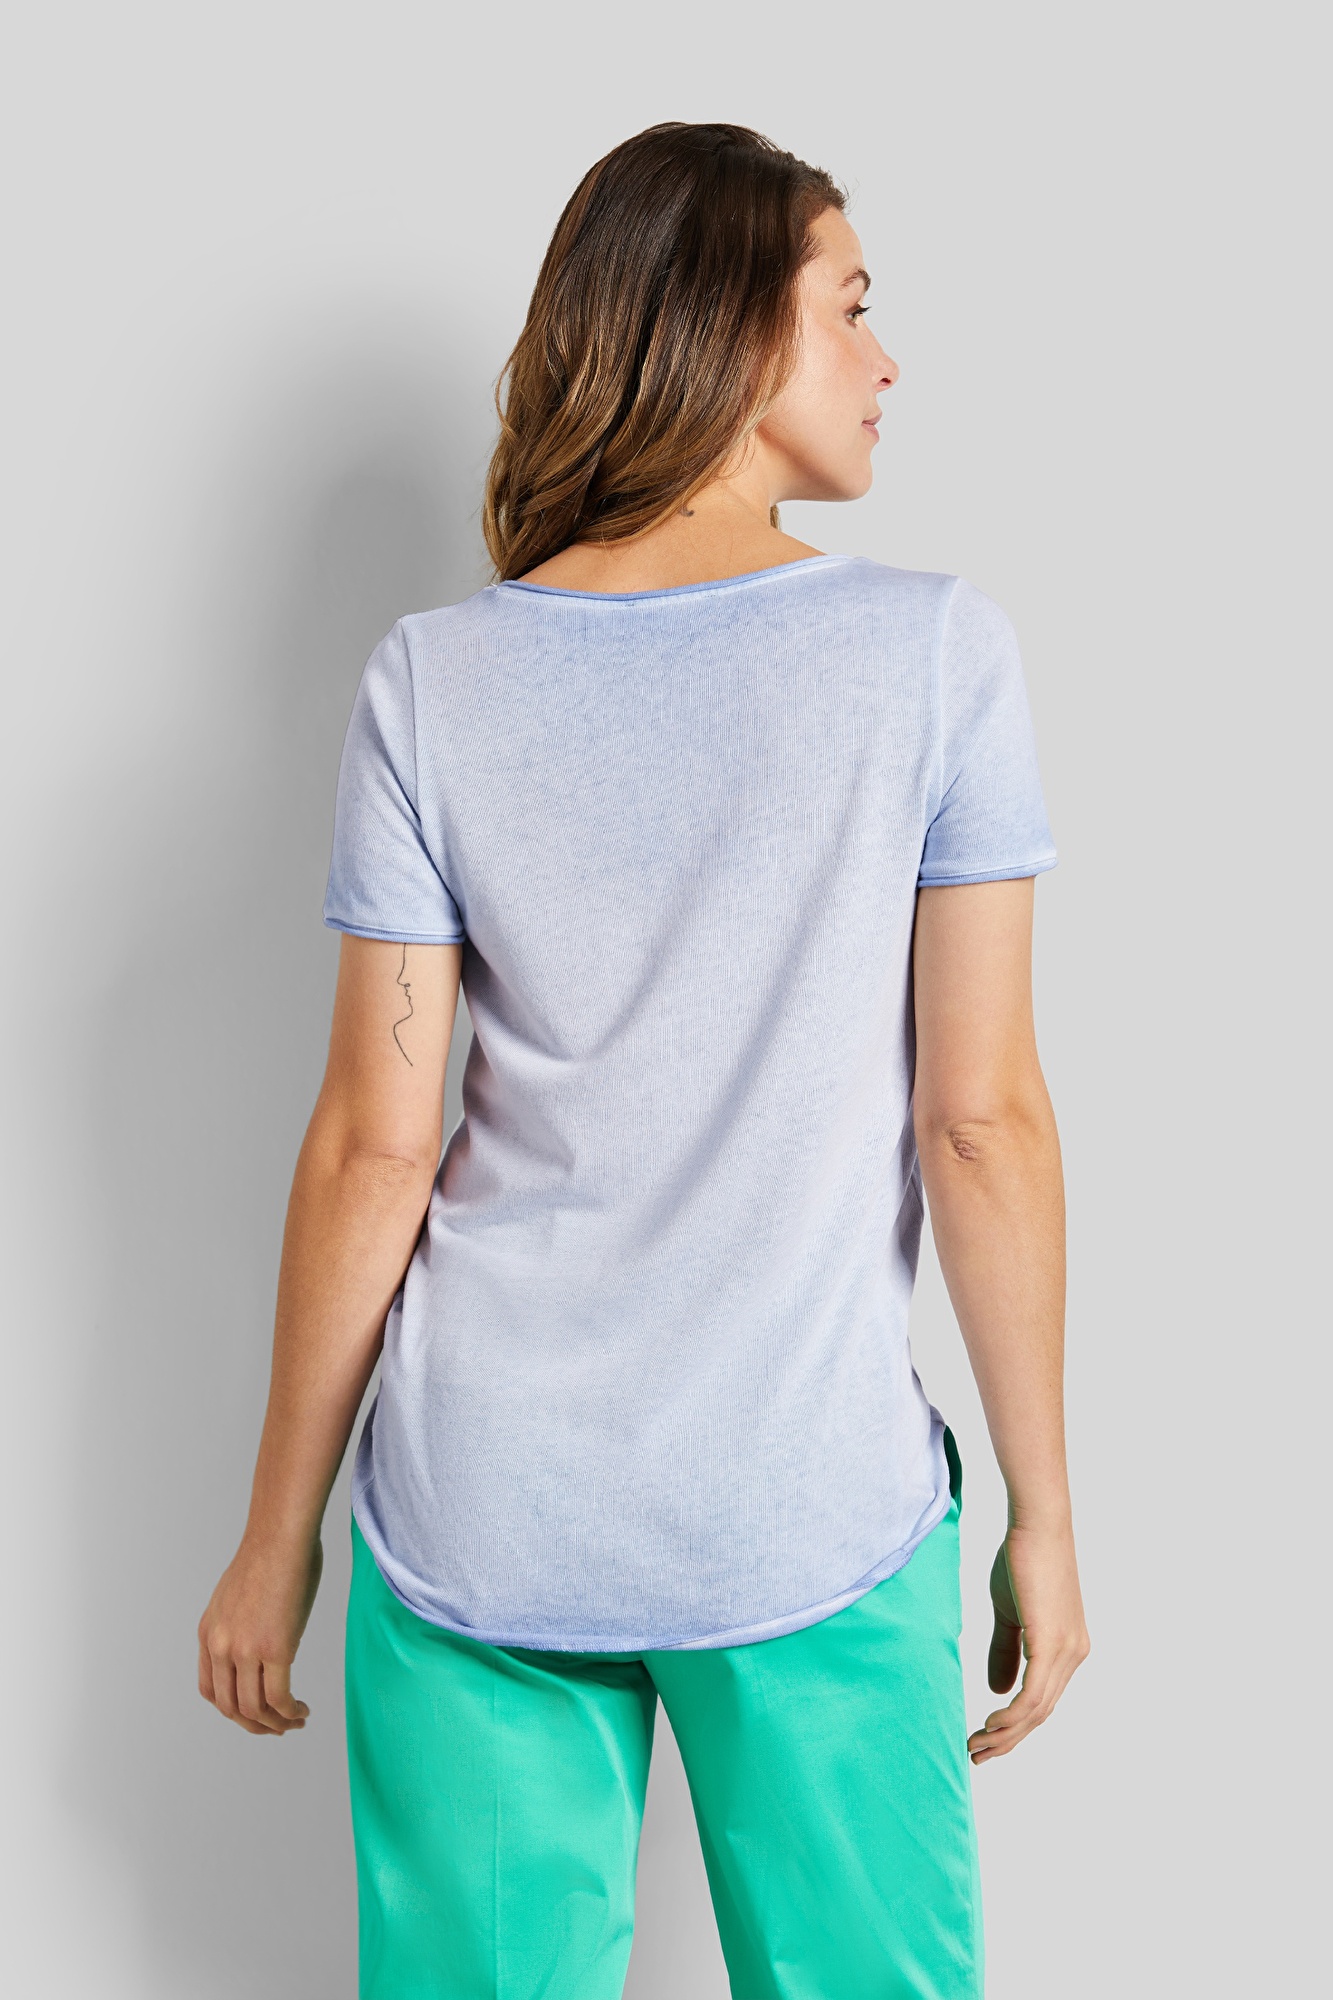 verwaschener hellblau T-shirt | Rundhals in bugatti mit leicht Optik